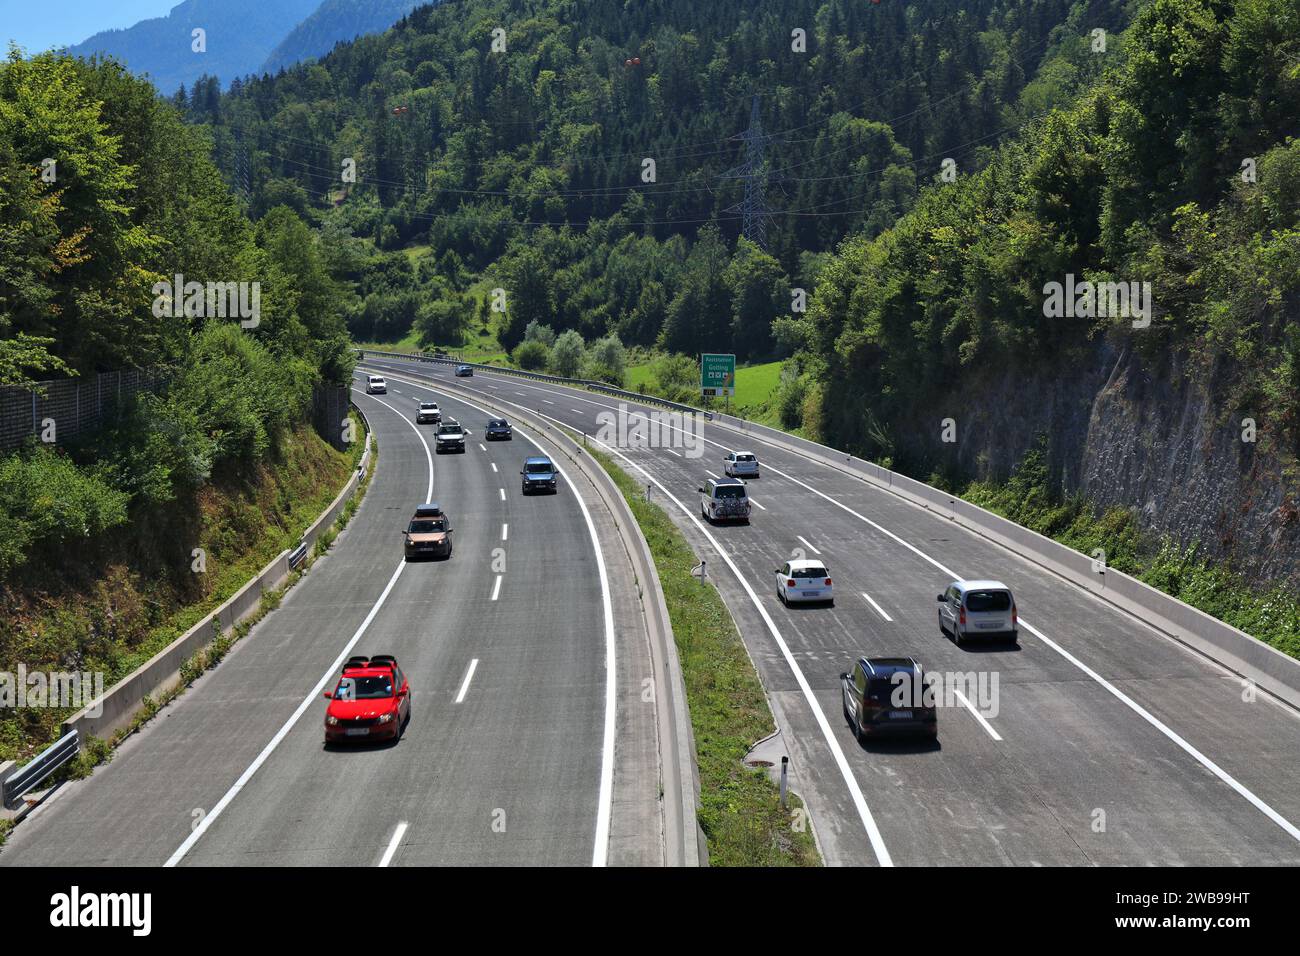 HALLEIN, AUSTRIA - AUGUST 4, 2022: Motorway (Autobahn) near Hallein in Salzburg state in Austria. Banked turn with concrete surface. Stock Photo